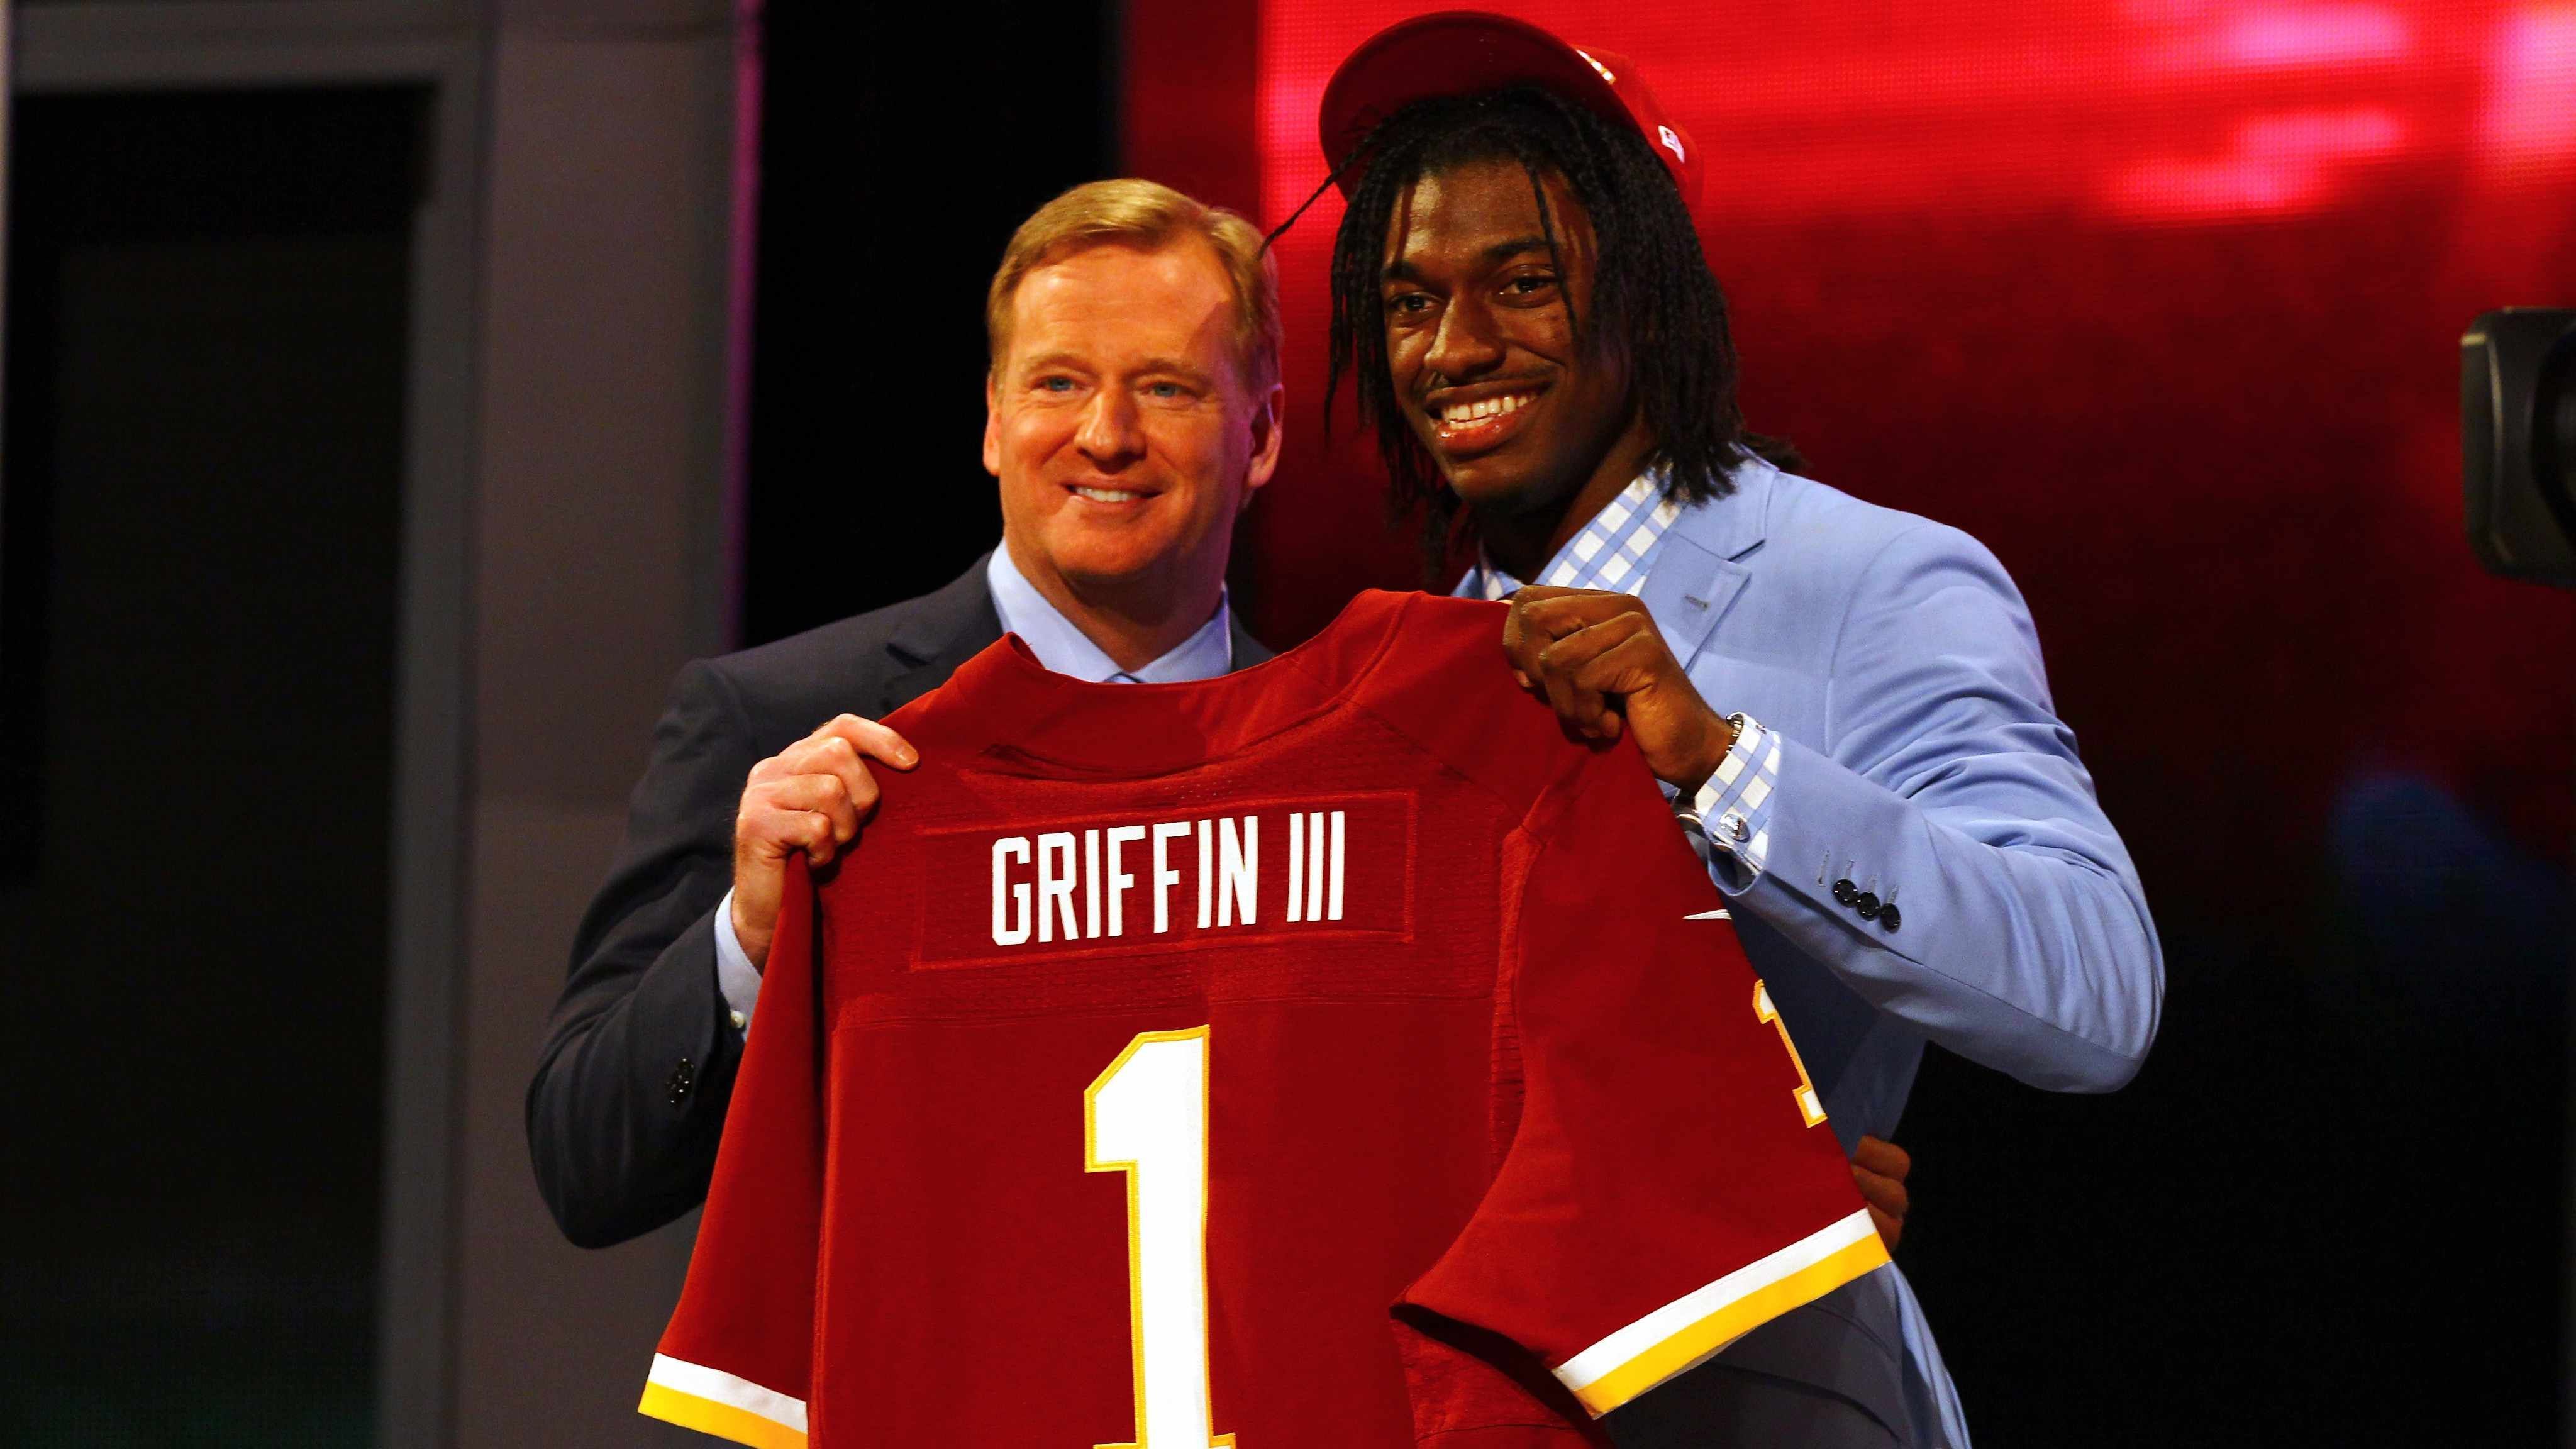 
                <strong>Robert Griffin III </strong><br>
                 - Draft: 2012 an 2. Stelle von den Washington Redskins  - Stationen: Washington Redskins 2011 bis 2015, Cleveland Browns 2015, Baltimore Ravens 2018 bis 2020  - Aktuell: Free Agent
              